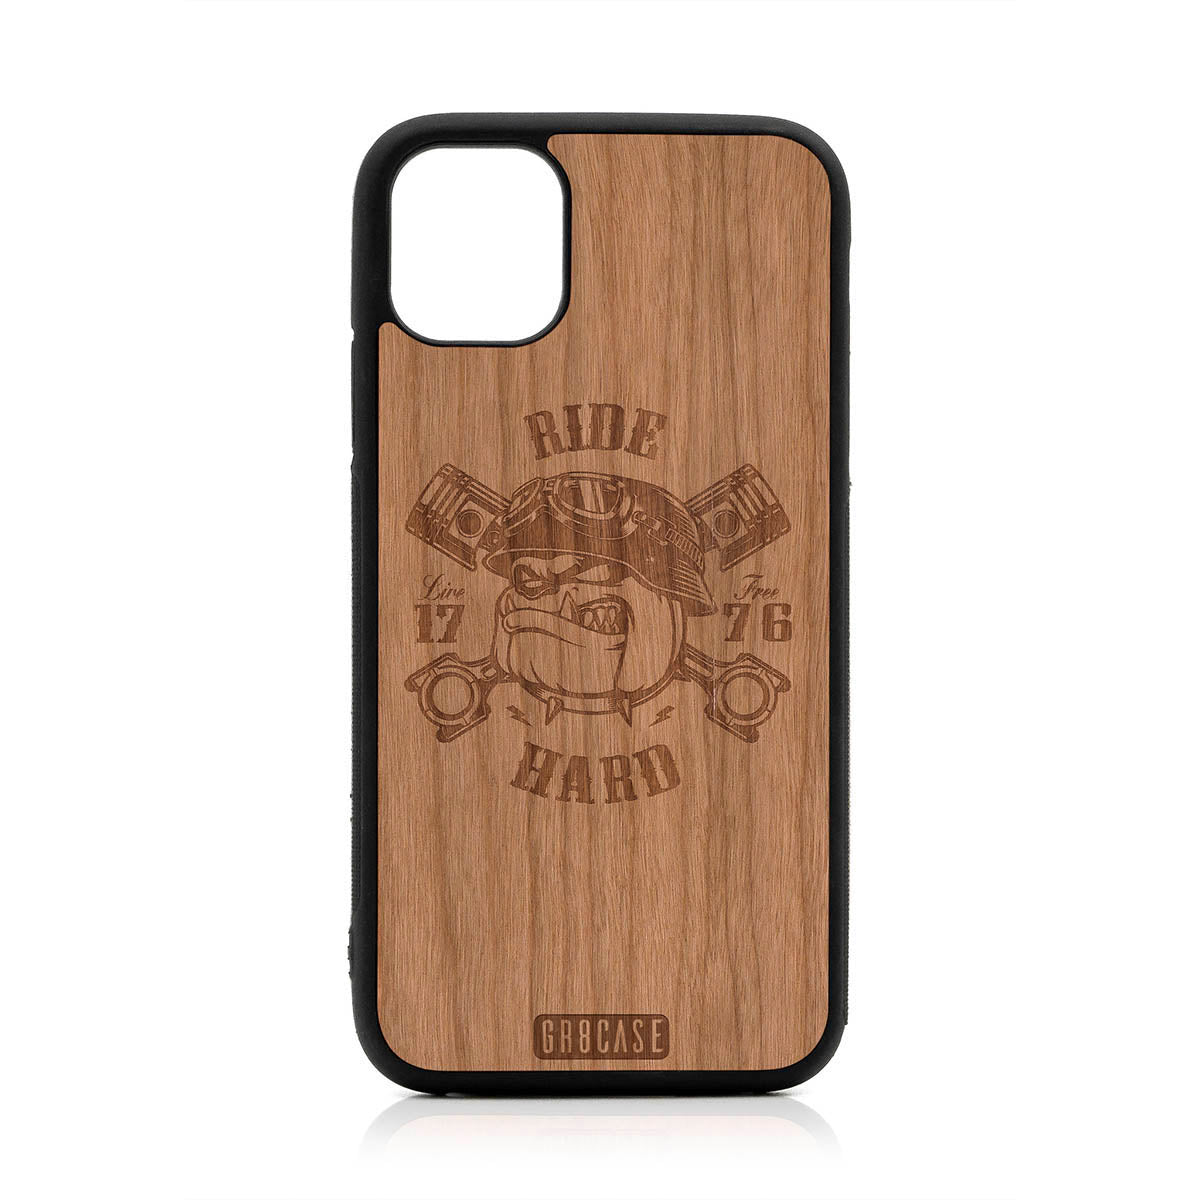 Ride Hard Live Free (Biker Dog) Design Wood Case For iPhone 11 by GR8CASE